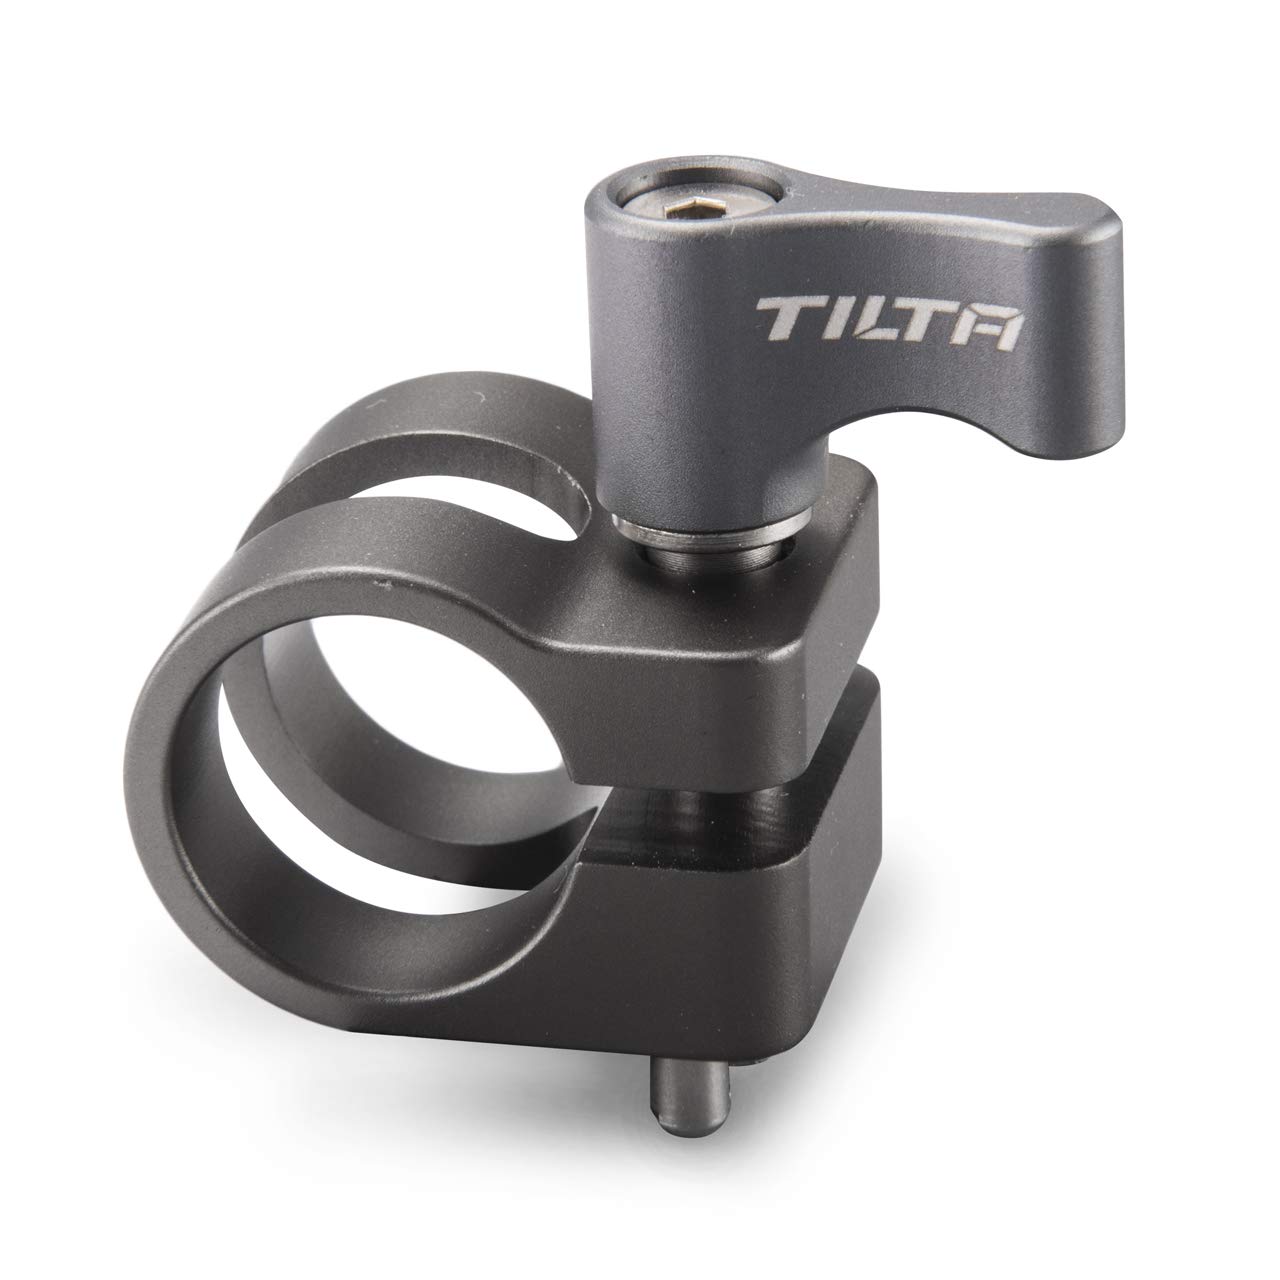 (Tilta Gray) TILTA TA-TSRA-15 15mm Top Single Rod Holder for BMPCC 4K Cage Blackmagic Pocket Cinema Camera 4K Rig